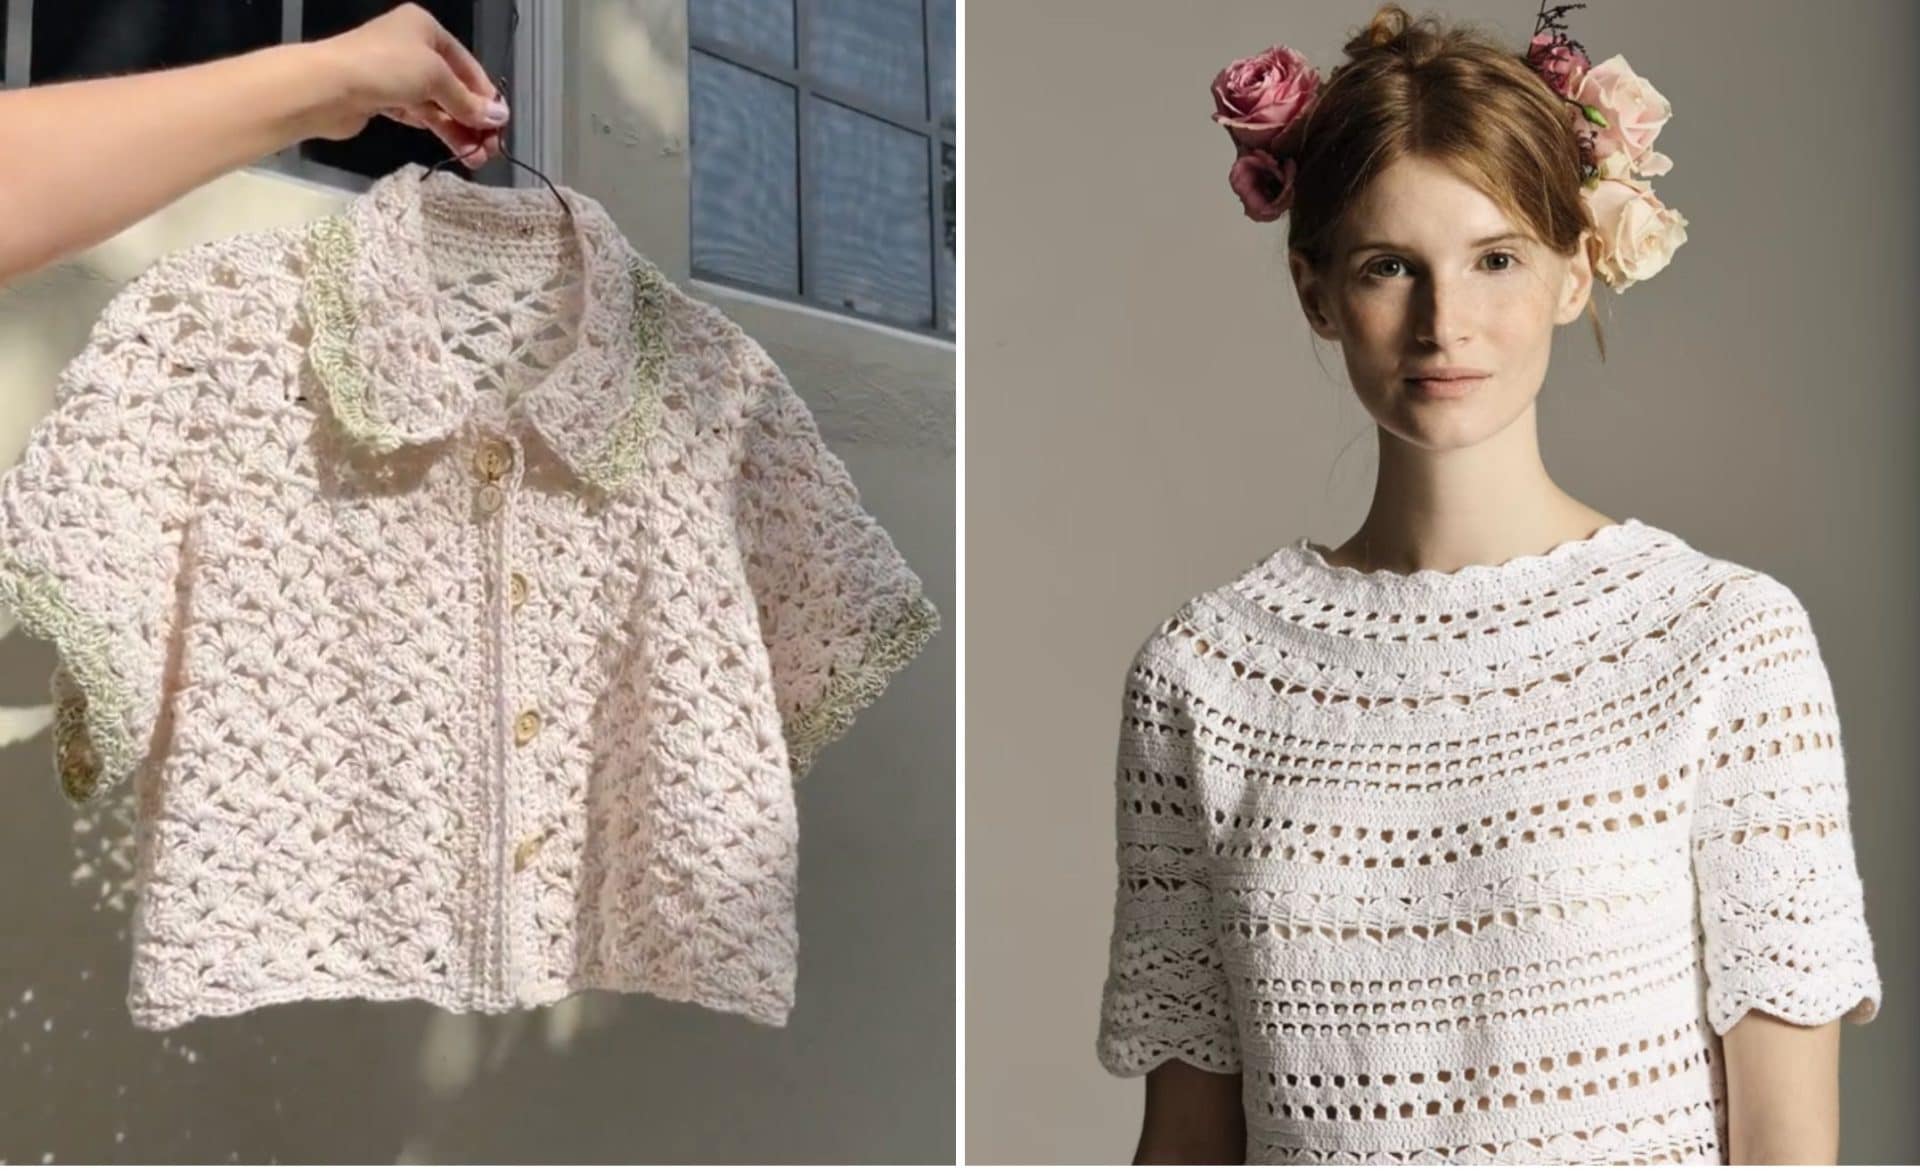 Women Crochet Crop Top Mesh Knit Blouse Shirt Cap Sleeve Crochet